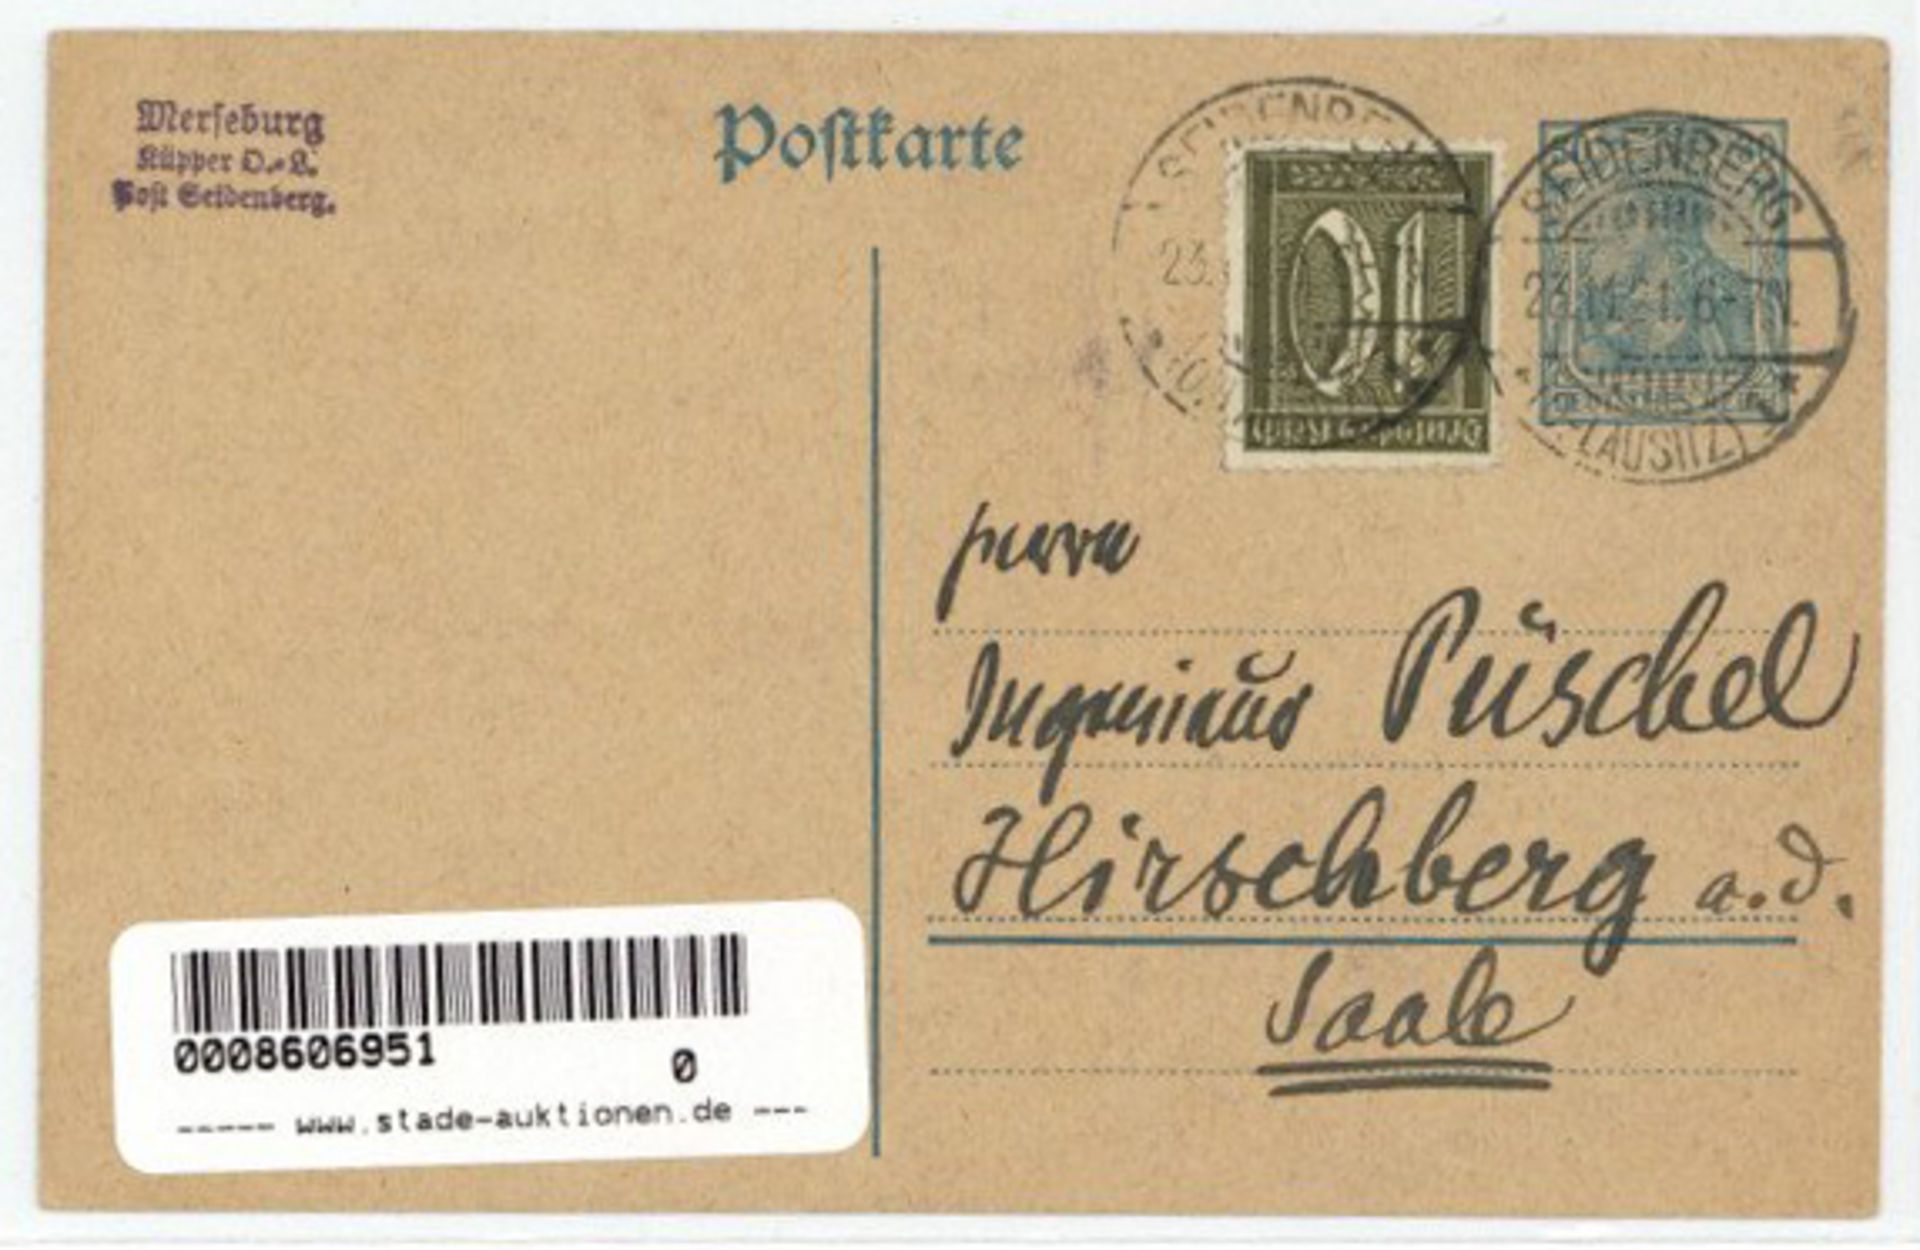 Merseburg, Otto Wilhelm handgemalte und handgeschrieben AK 1921 I-II - Bild 2 aus 2